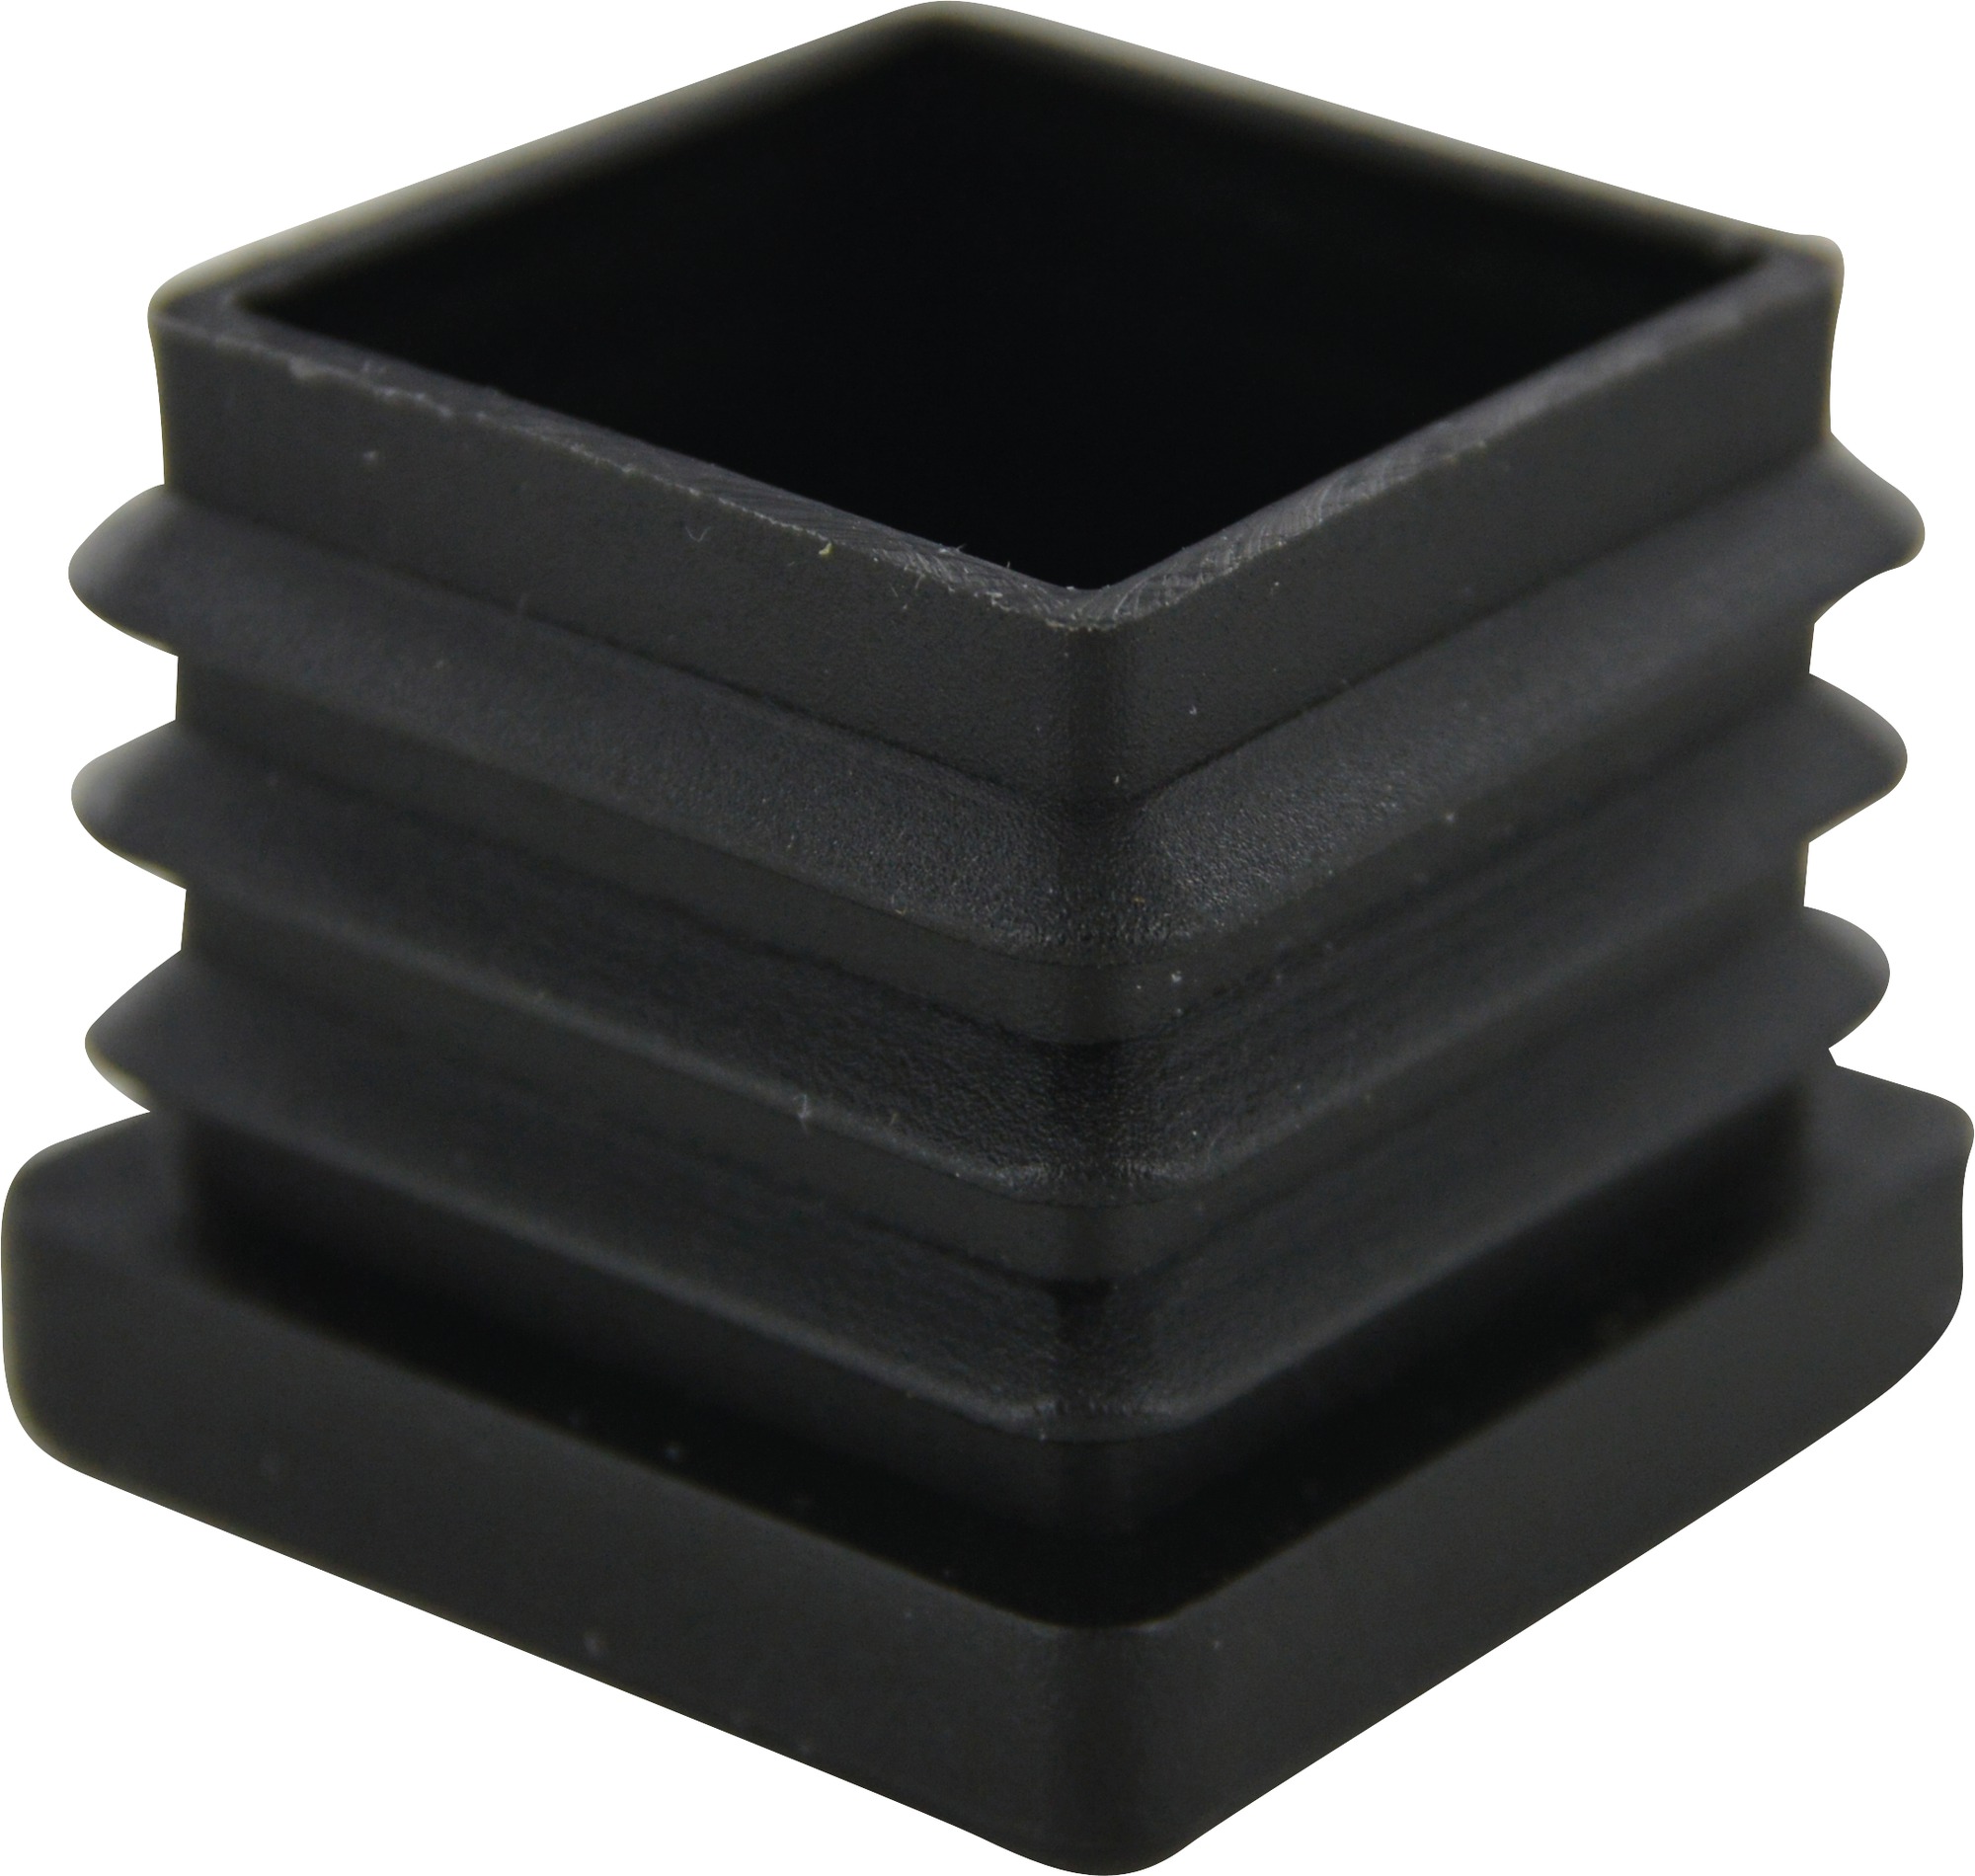 Embout rentrant carré plastique noir Guitel point M - Dimensions 30 x 30 mm - Vendu par 4